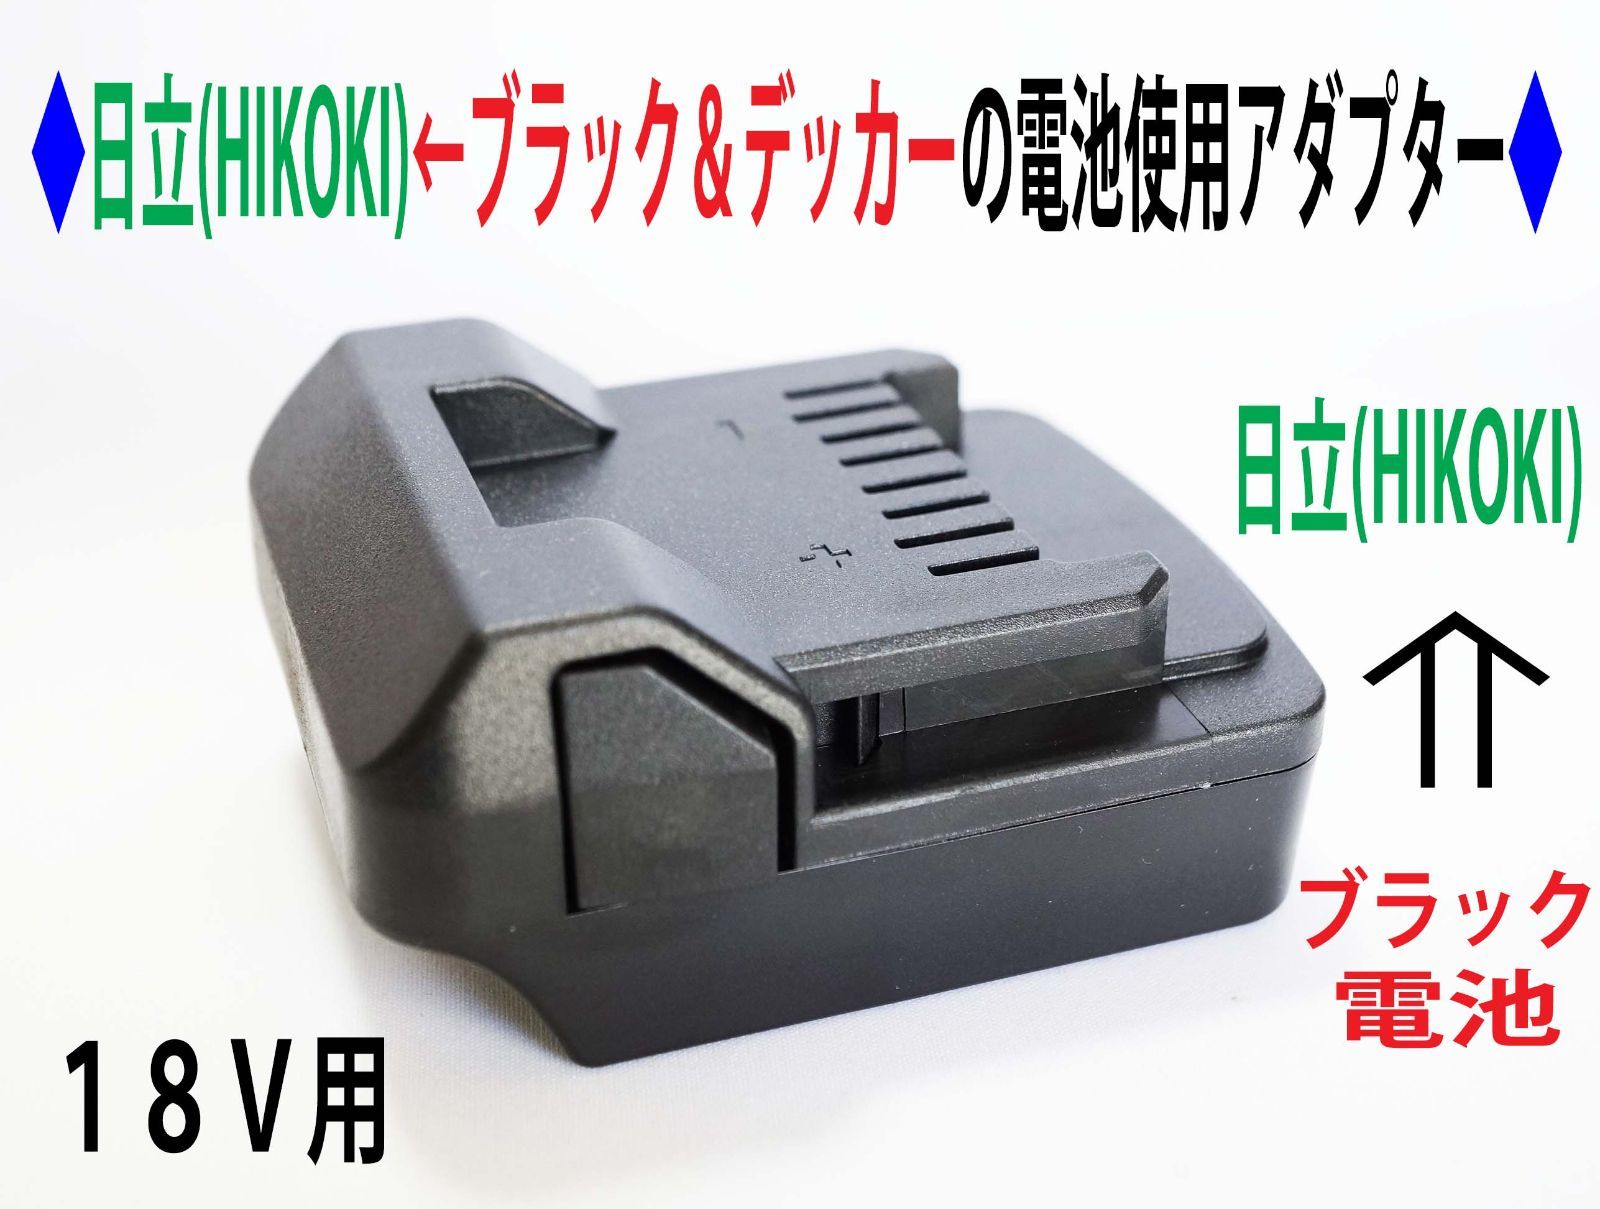 ◇日立(HIKOKI)のドリルを←ブラック＆デッカー(Black&Decker)の電池 